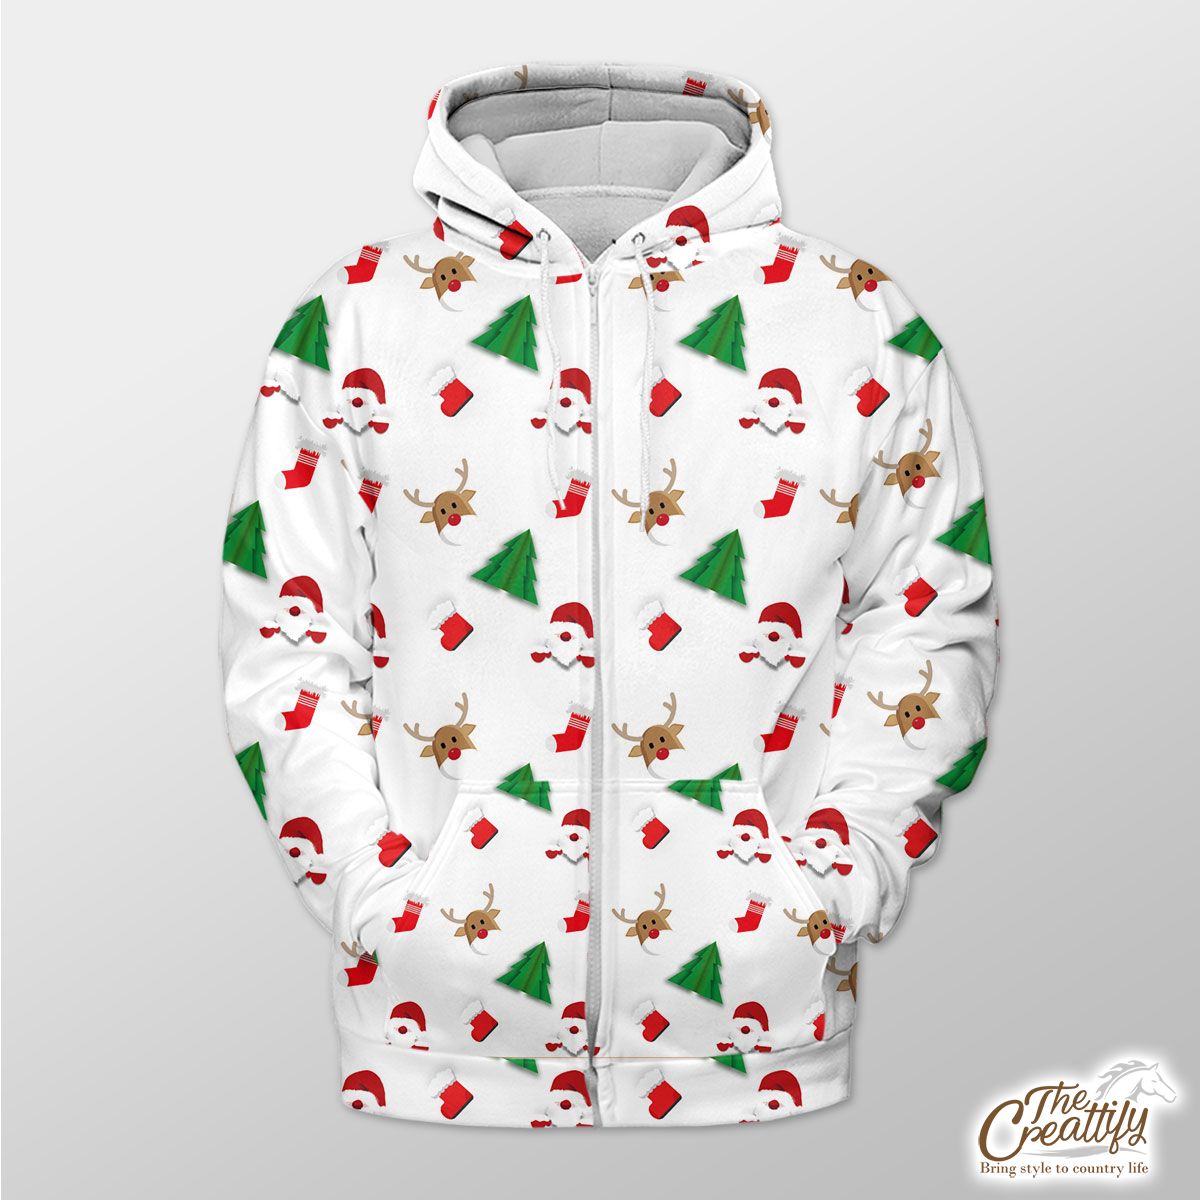 Santa Claus, Pine Tree Silhouette, Christmas Reindeer And Red Socks Seamless Pattern Zip Hoodie